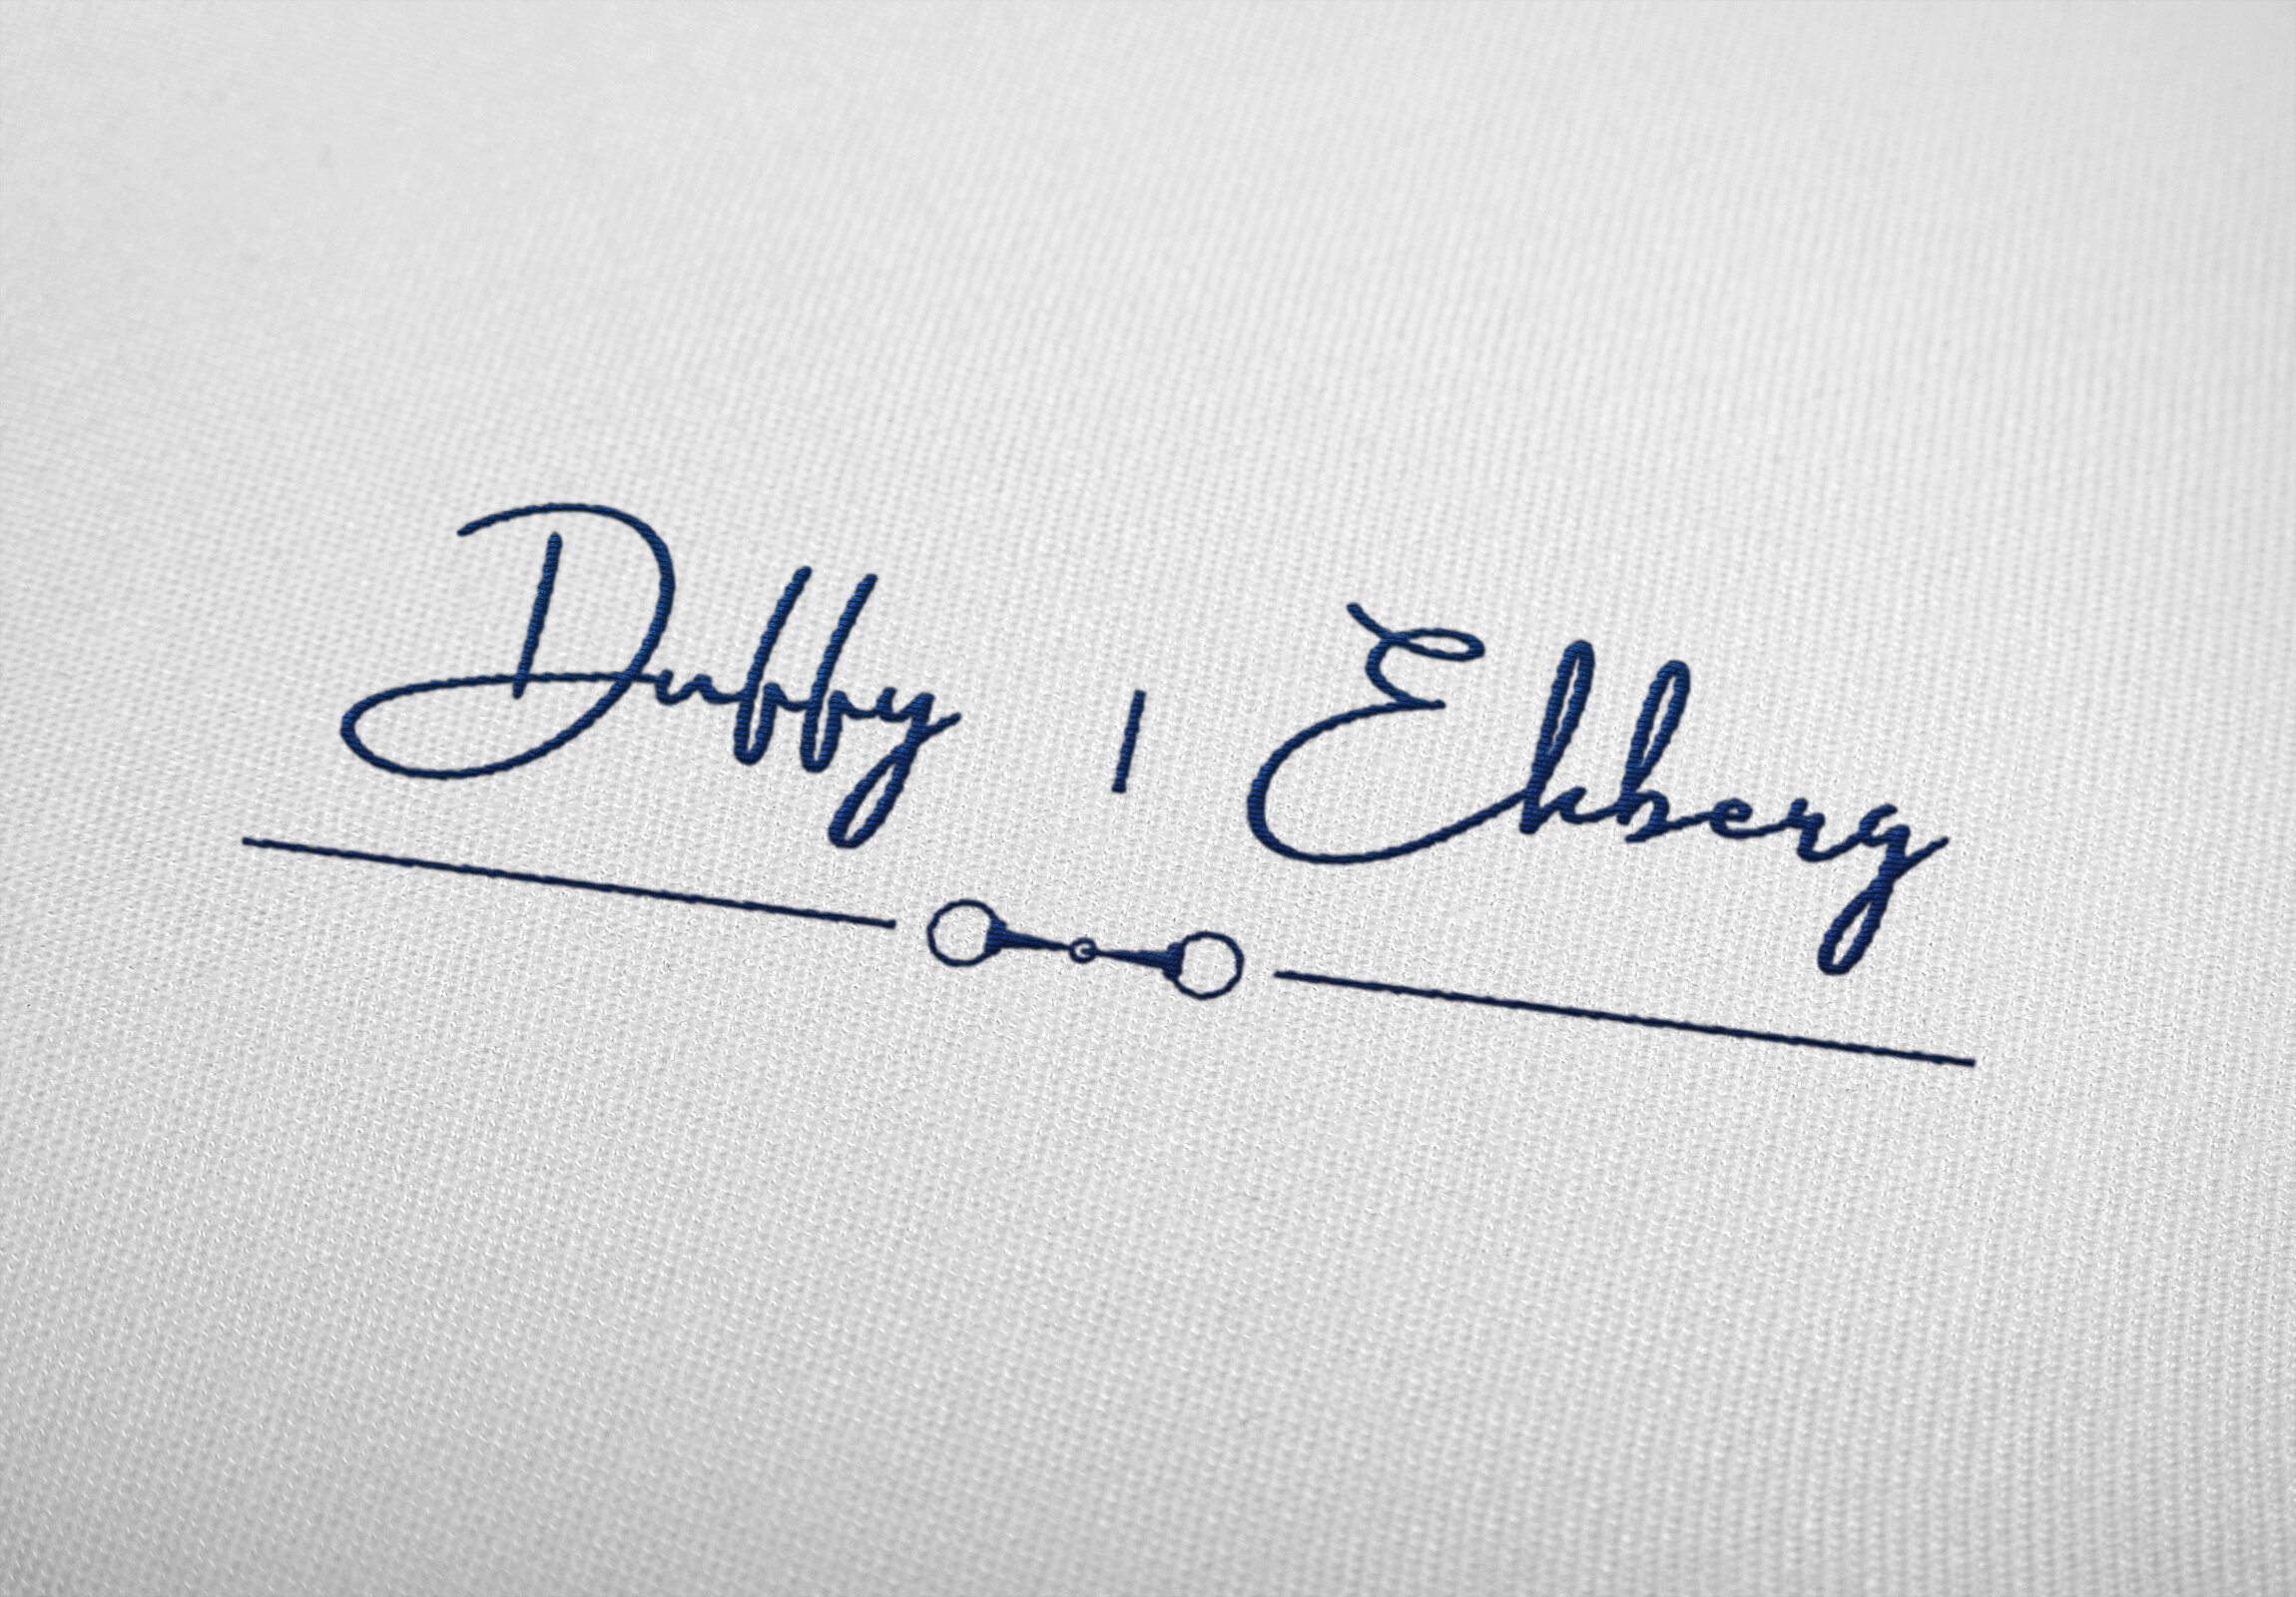 duffy ekber embroidery.jpg